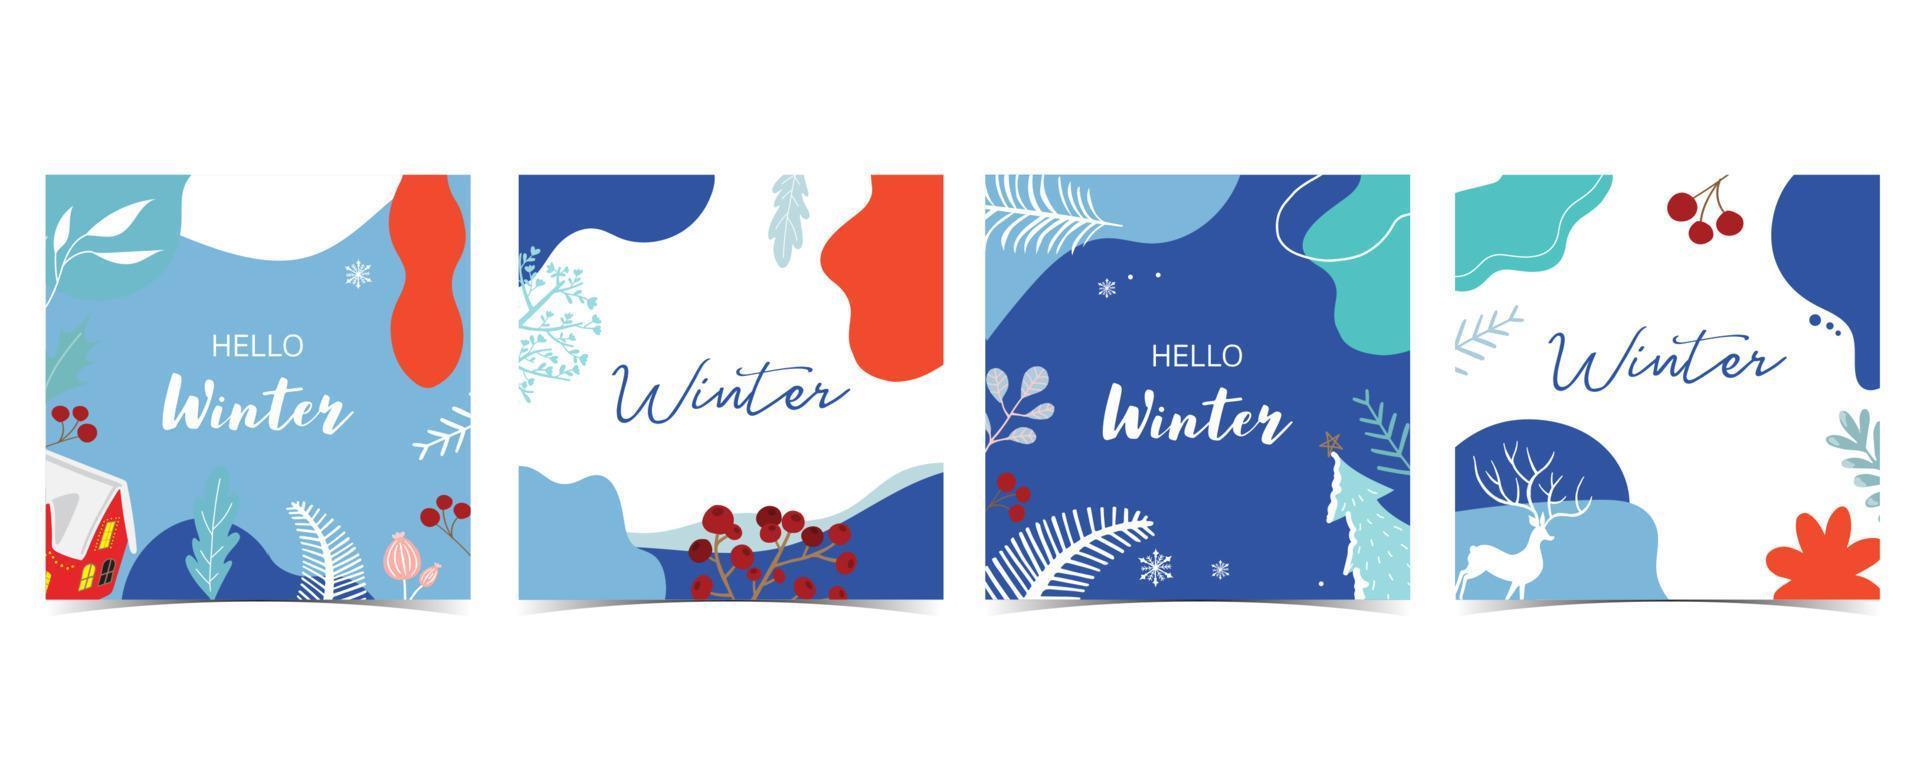 samling av vinterbakgrund med träd, regnhjort, blomma, löv. redigerbar vektorillustration för julinbjudan, vykort och webbplatsbanner vektor